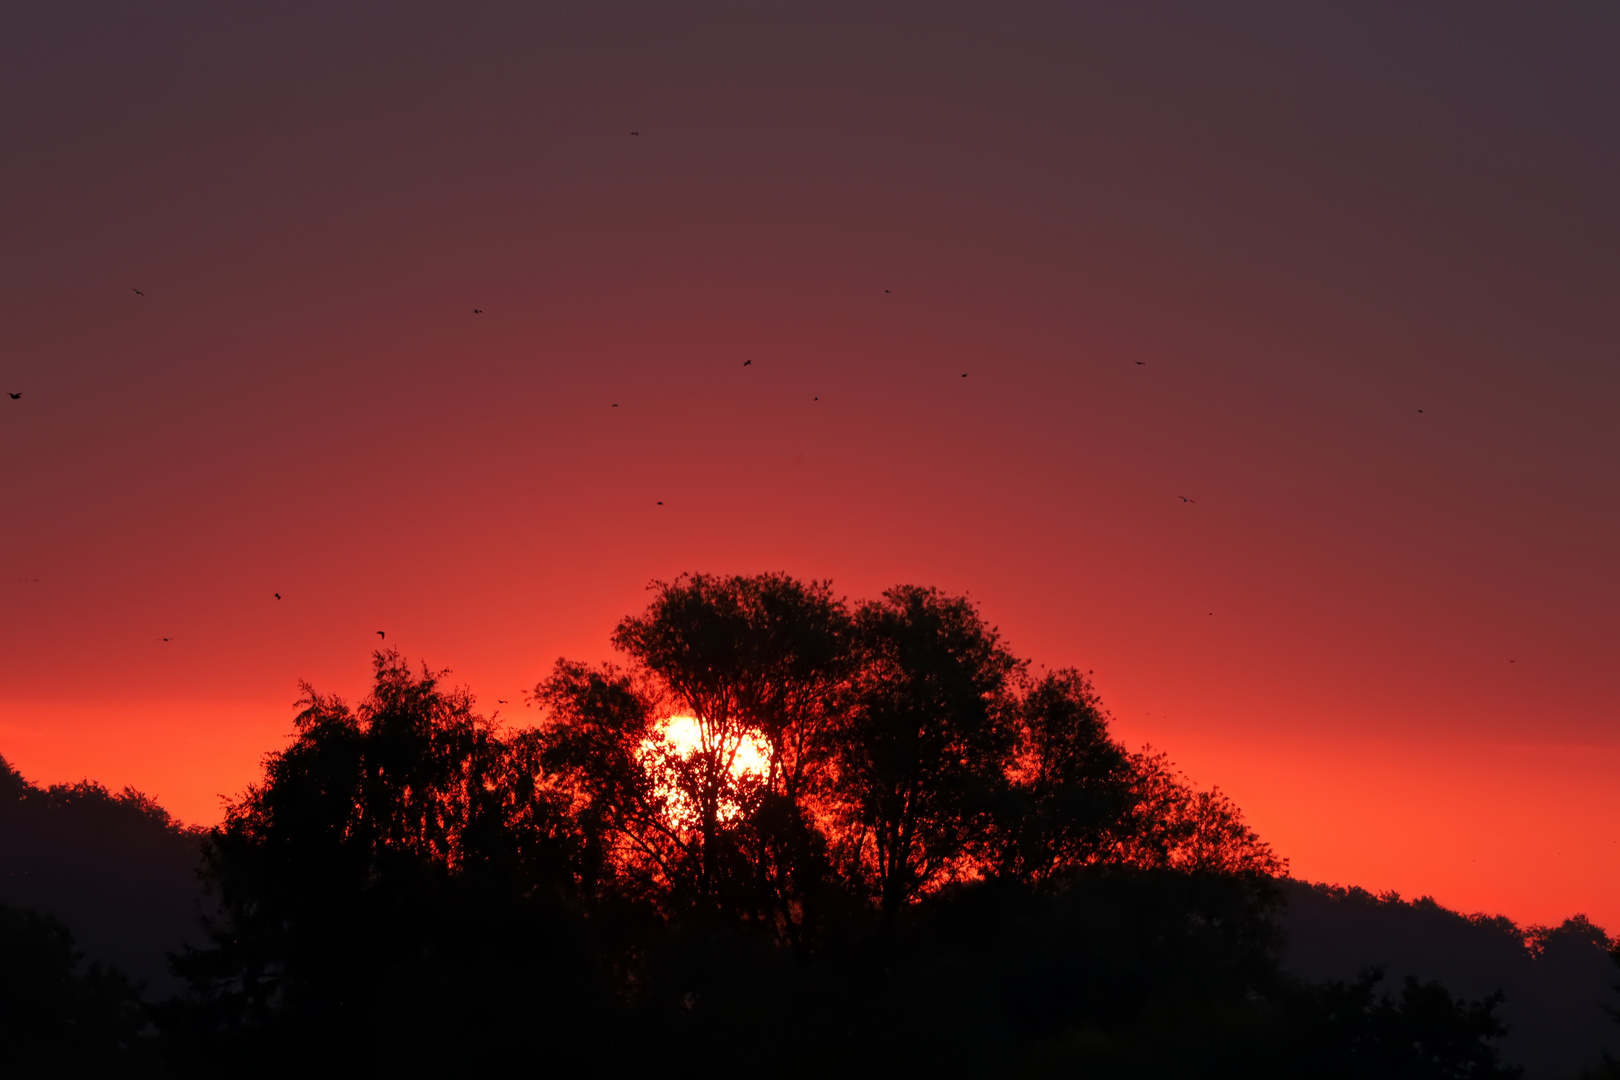 die Vögel starten zum Sonnenaufgang - the birds take off at sunrise